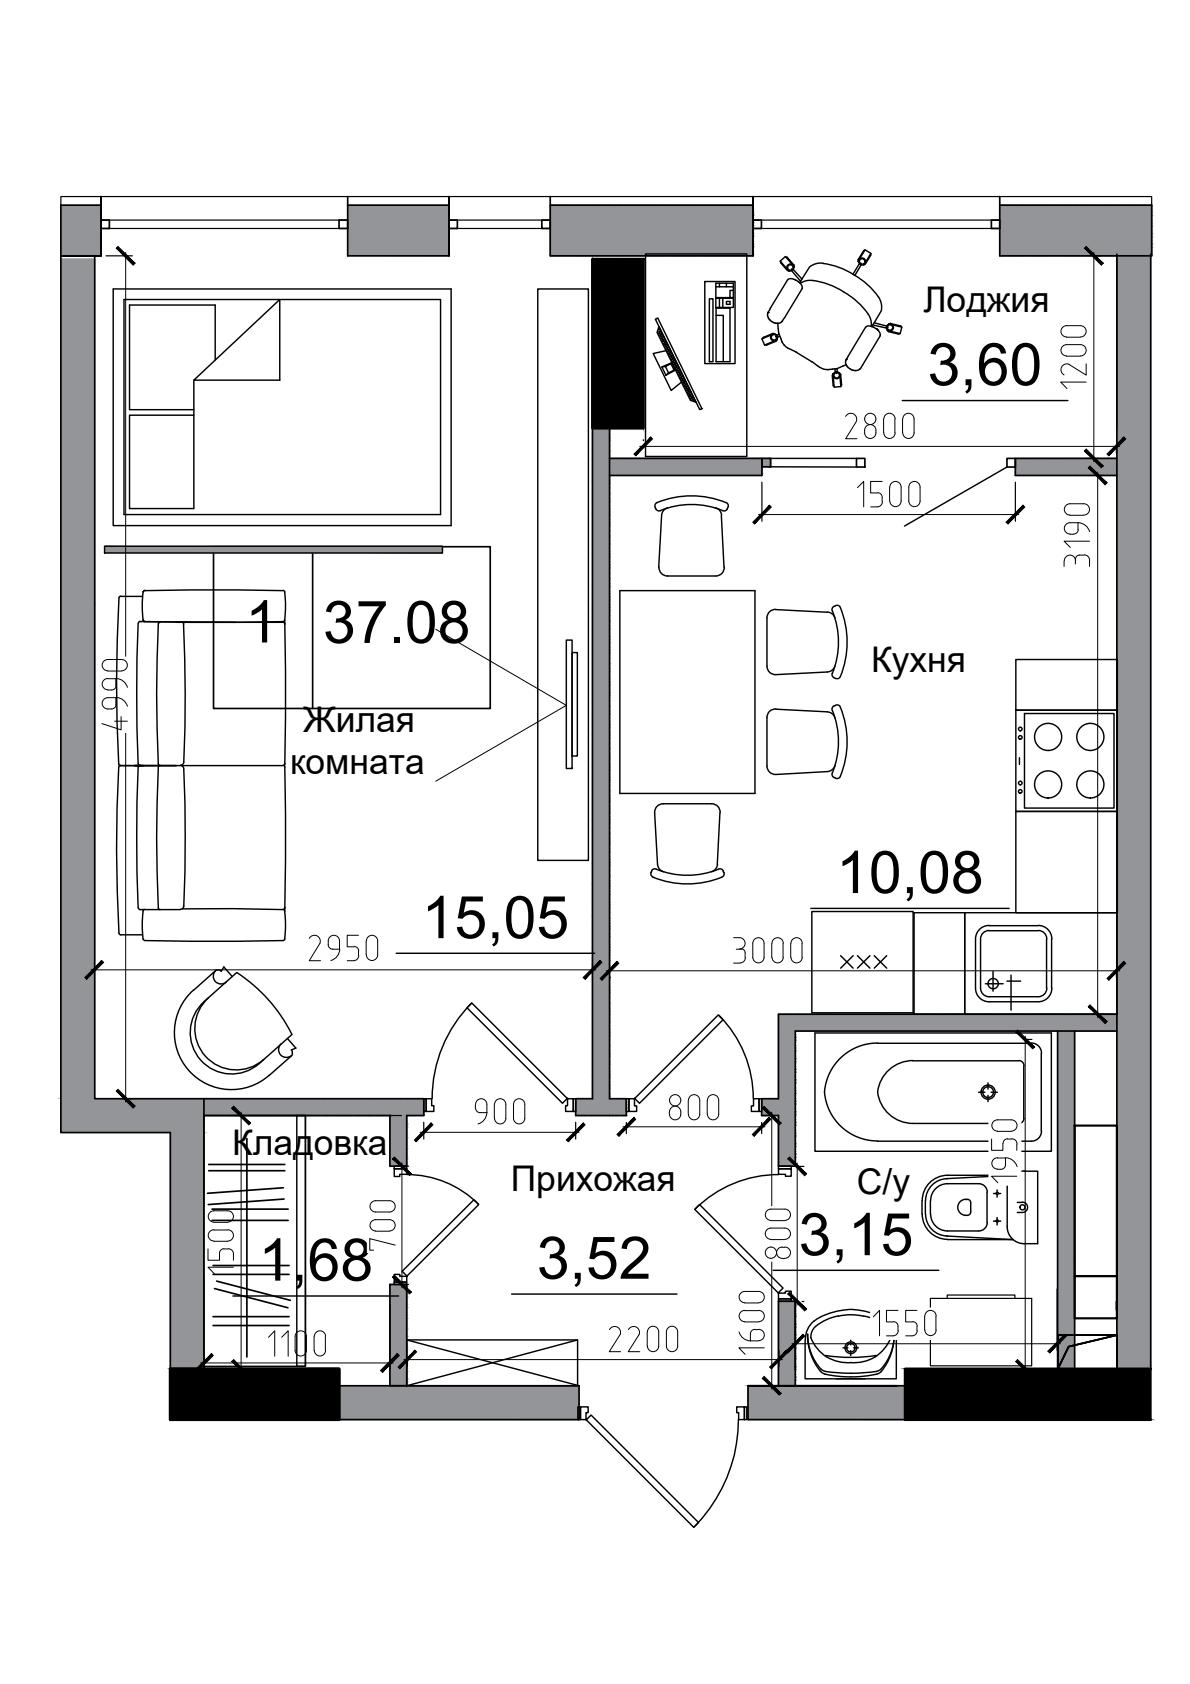 Планировка 1-к квартира площей 37.08м2, AB-04-11/0007б.